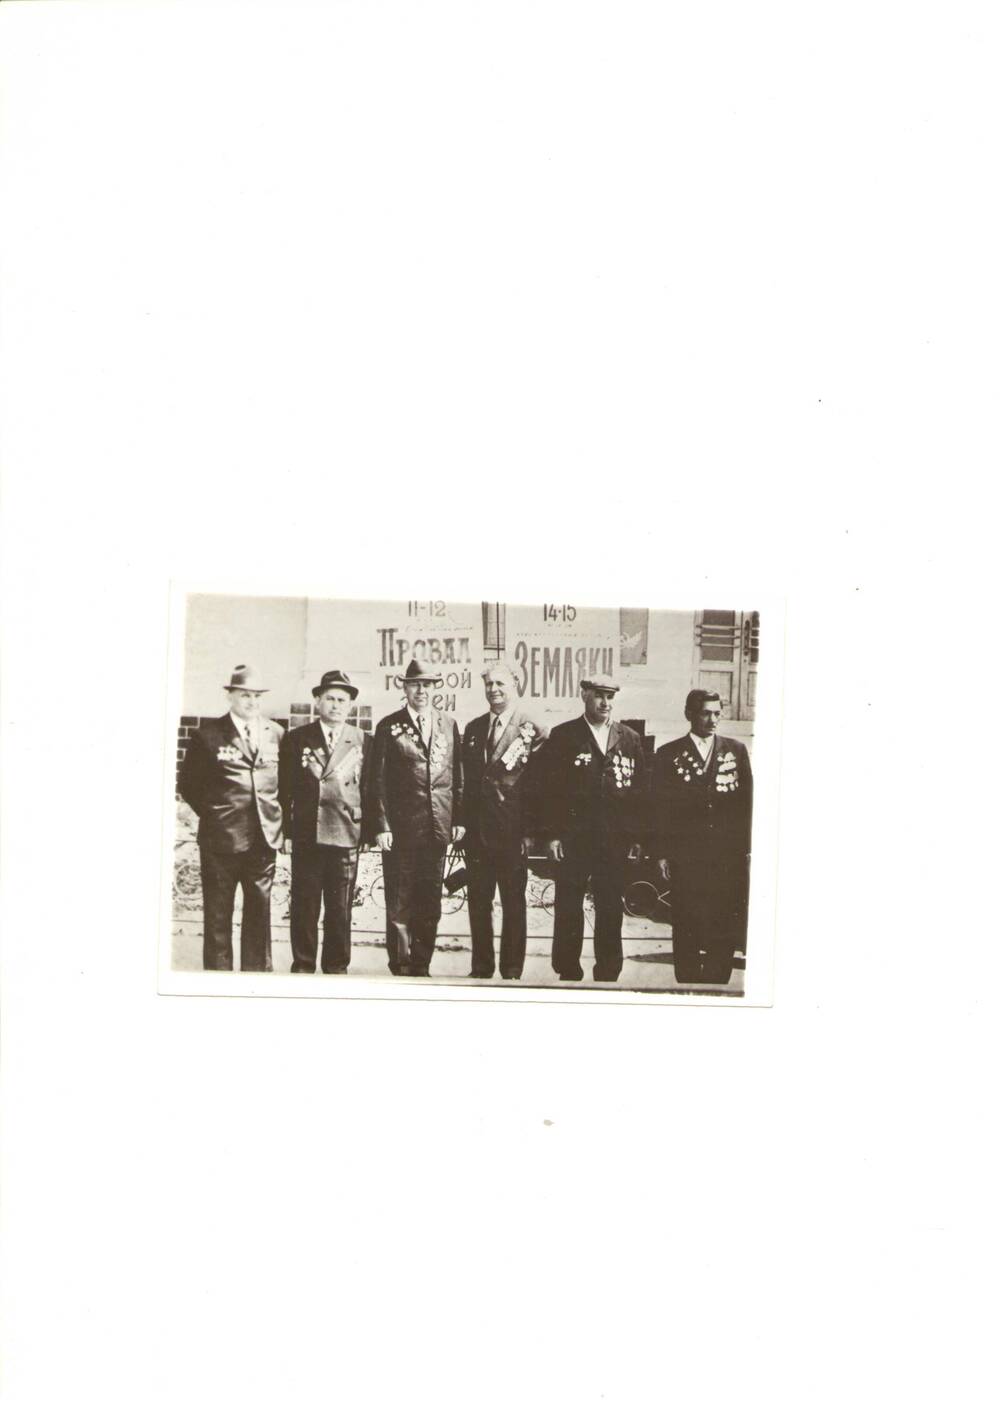 Фото черно-белое, групповое в рост,  встречи ветеранов 260 гвардейского стрелкового полка 86-ой гвард. стр. дивизии.  3-й слева  Матушкин Н. Д., 1970